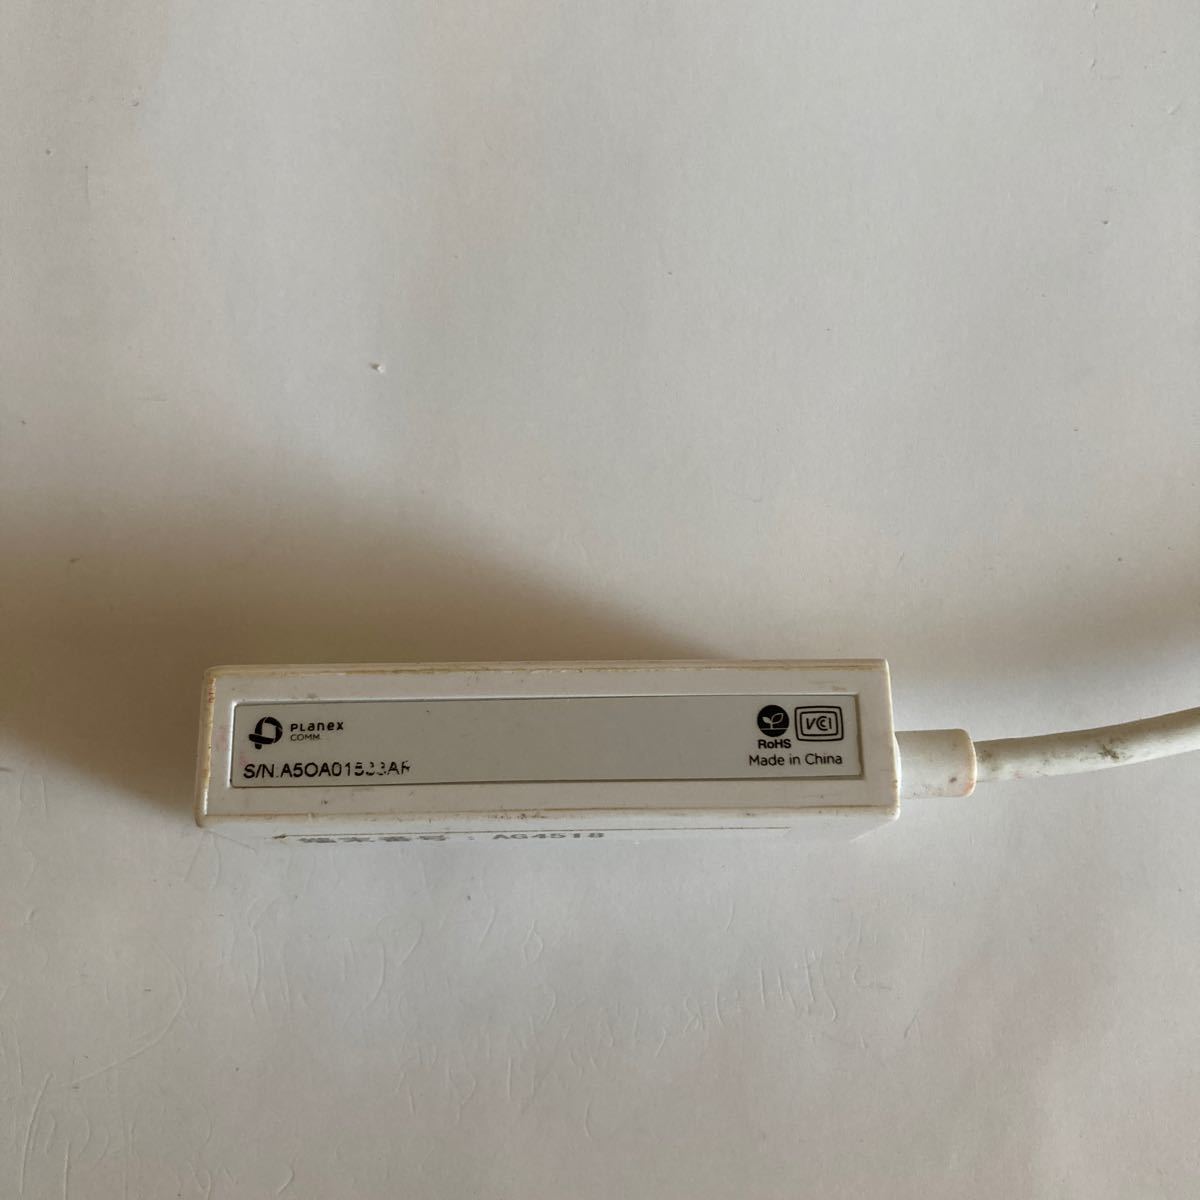 PLANEX Gigabit USB3.0対応 LANアダプタ (MacBook対応) UE-1000T-U3 